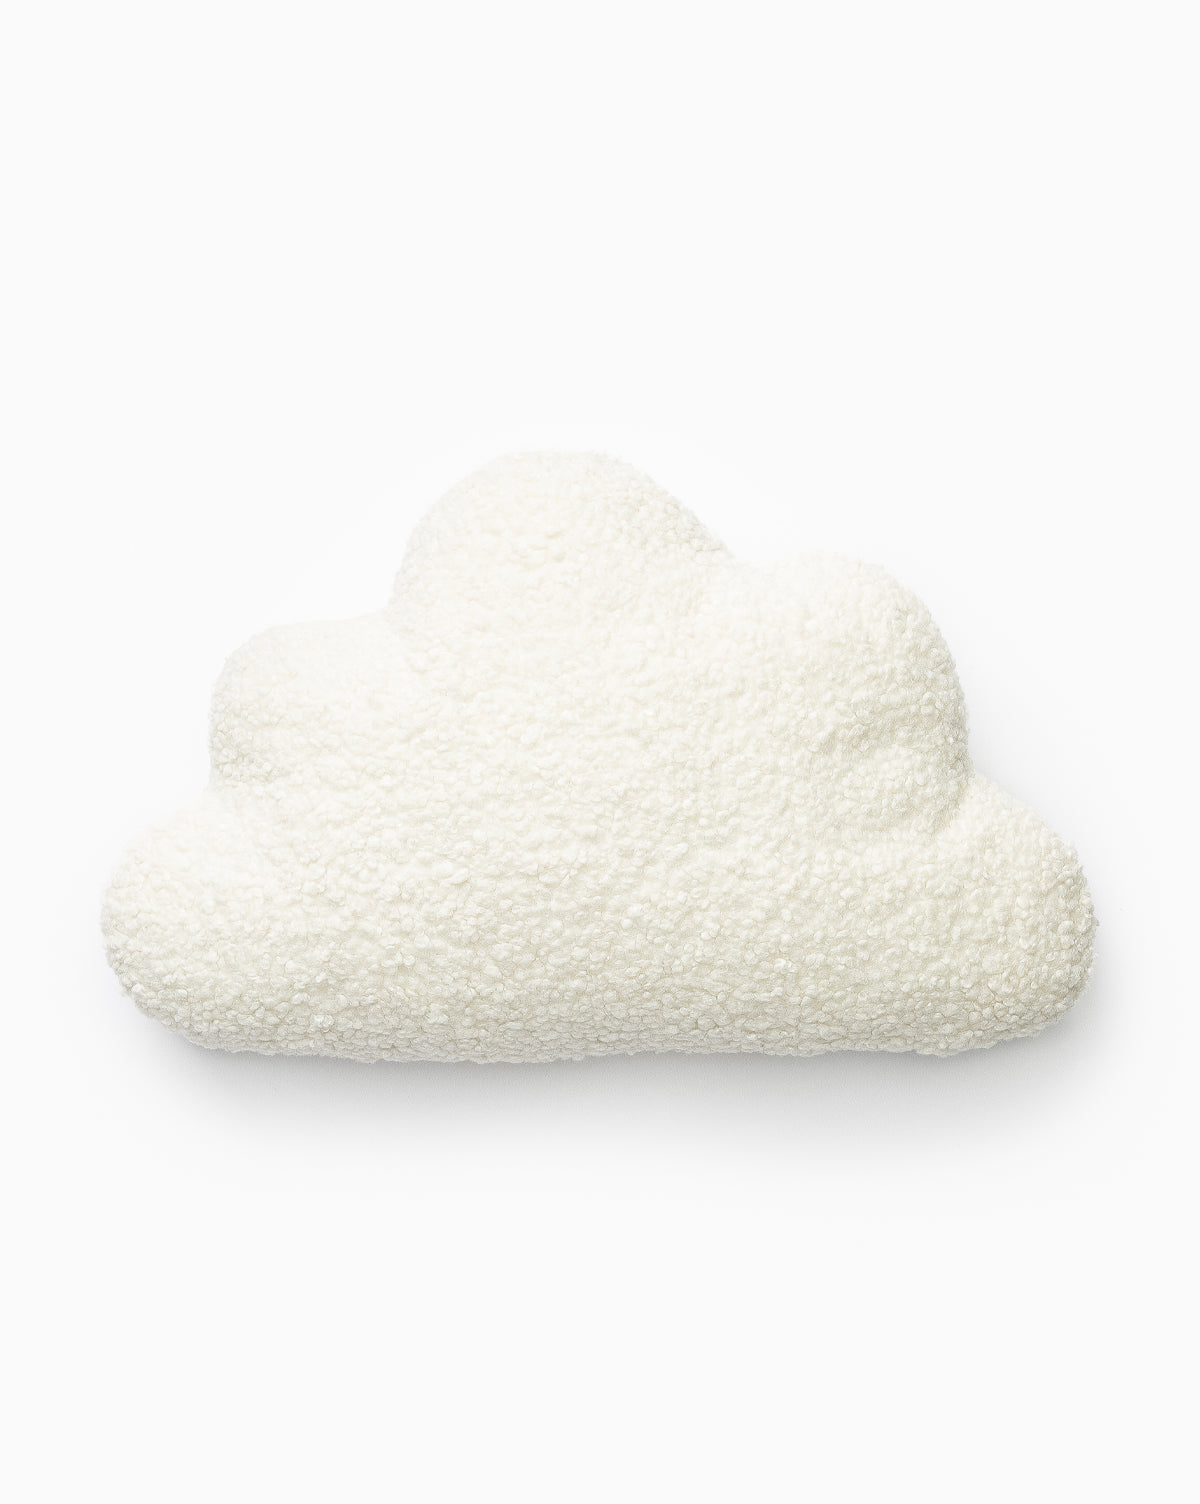 Faire, Plush Cloud Pillow